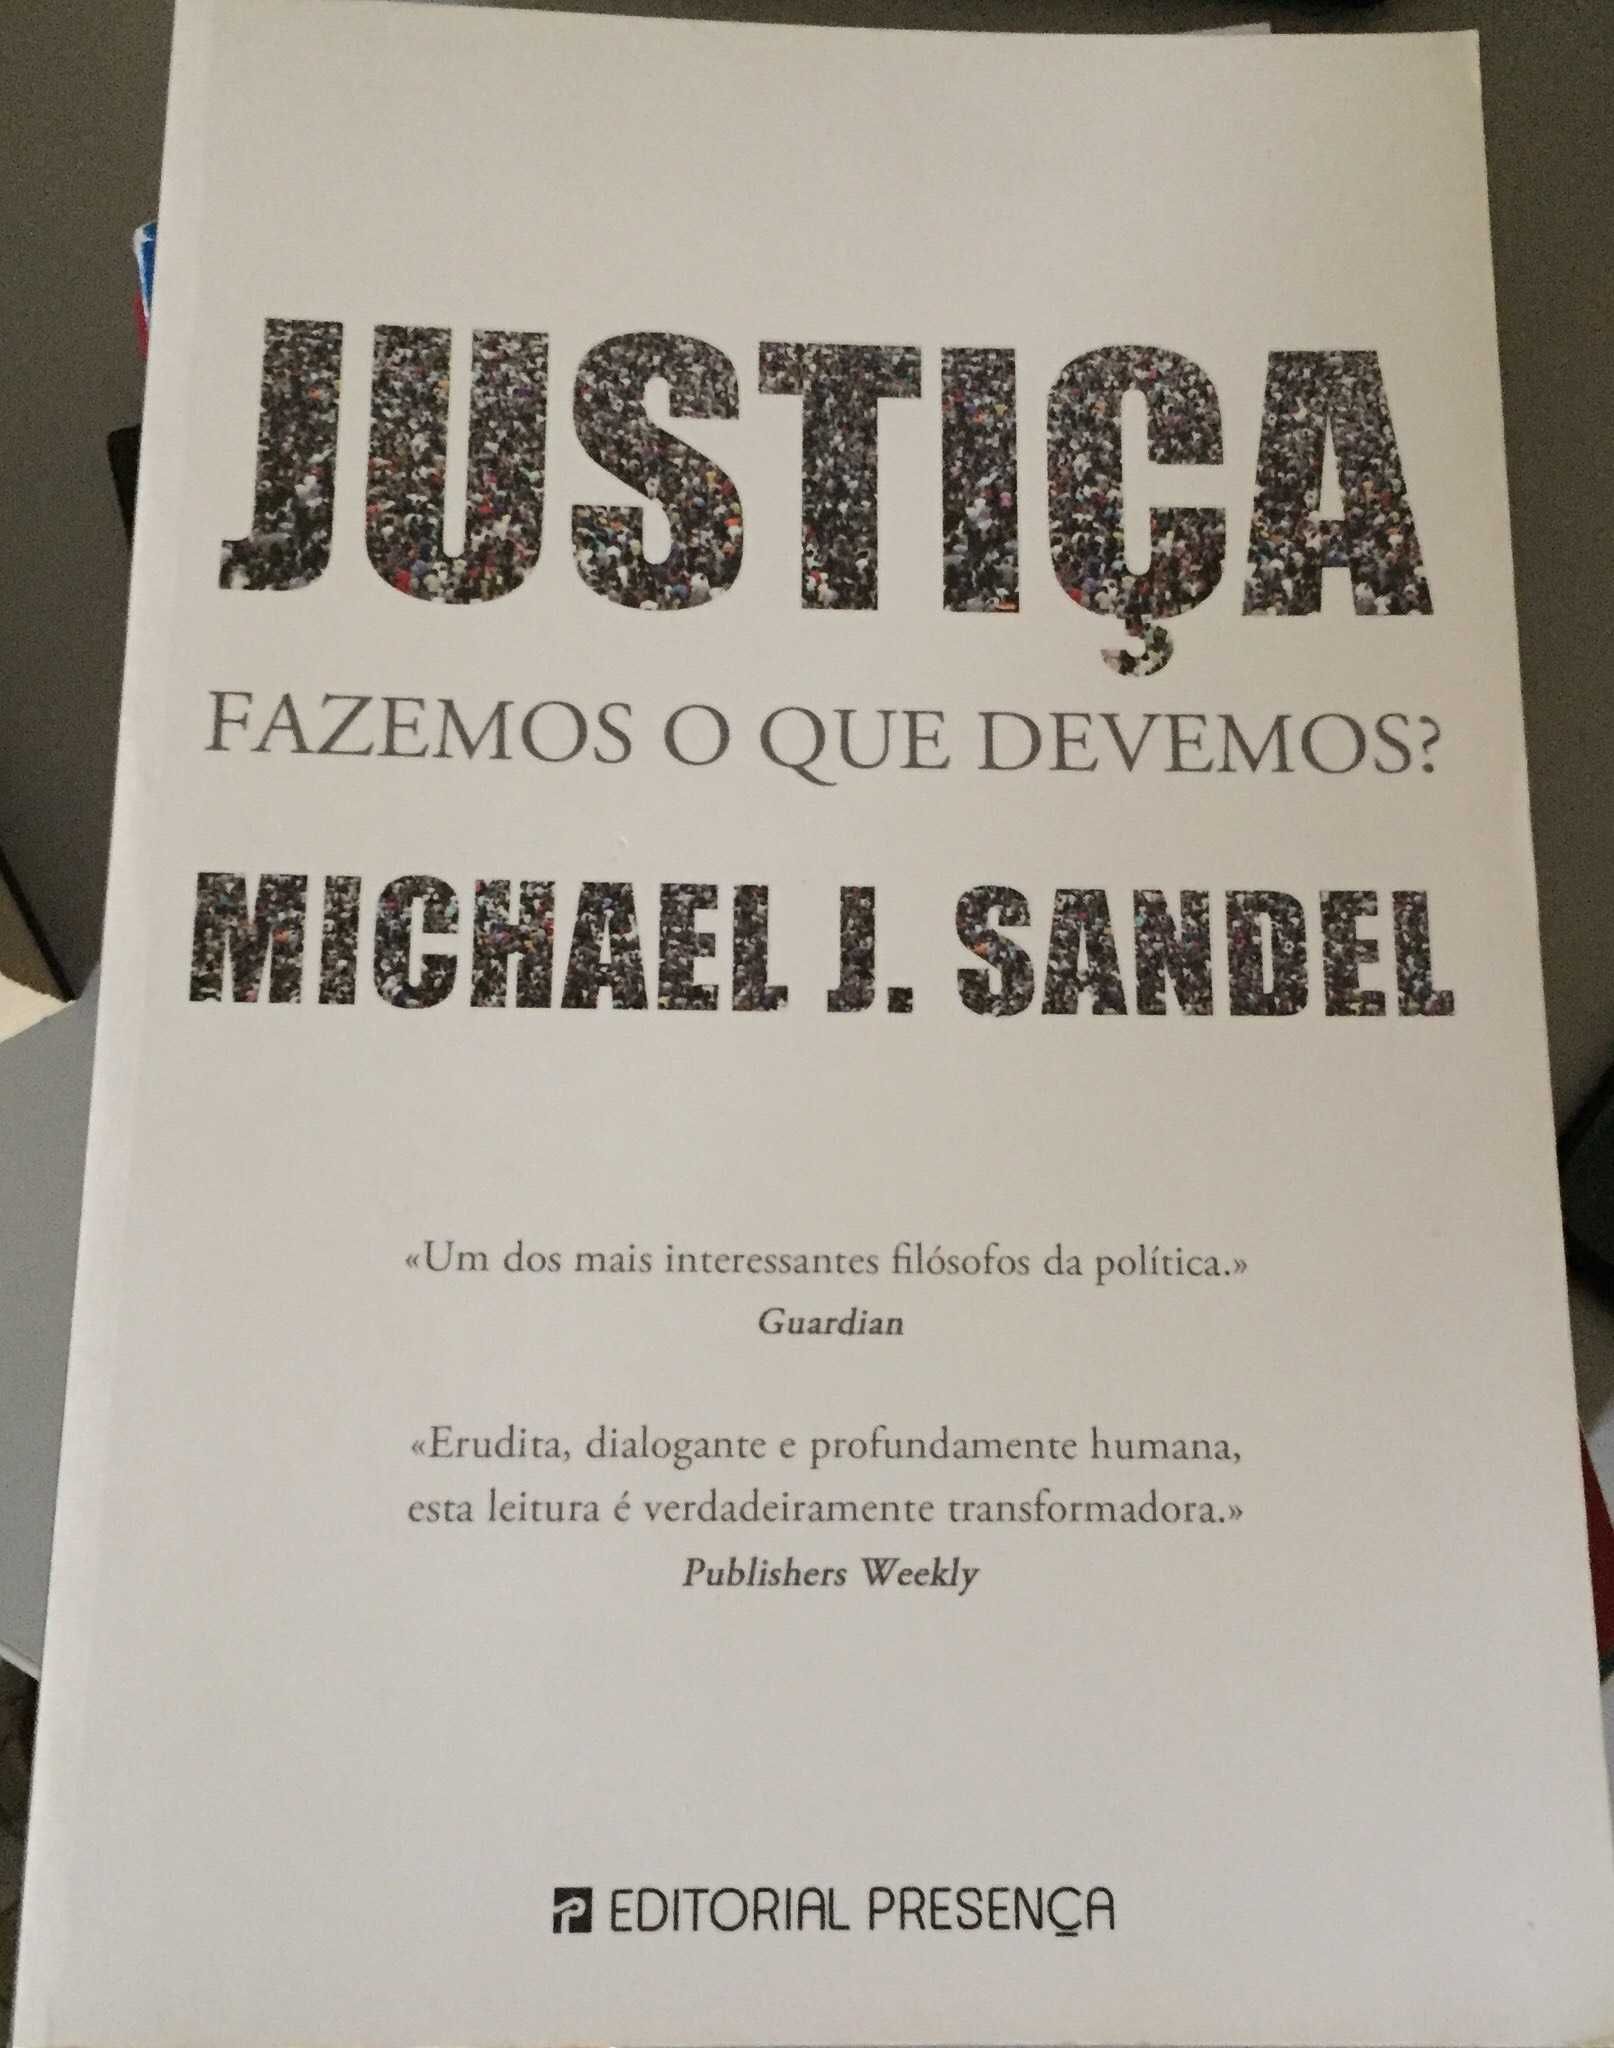 JUSTIÇA - Fazemos o que devemos ? de Michael J. Sandel